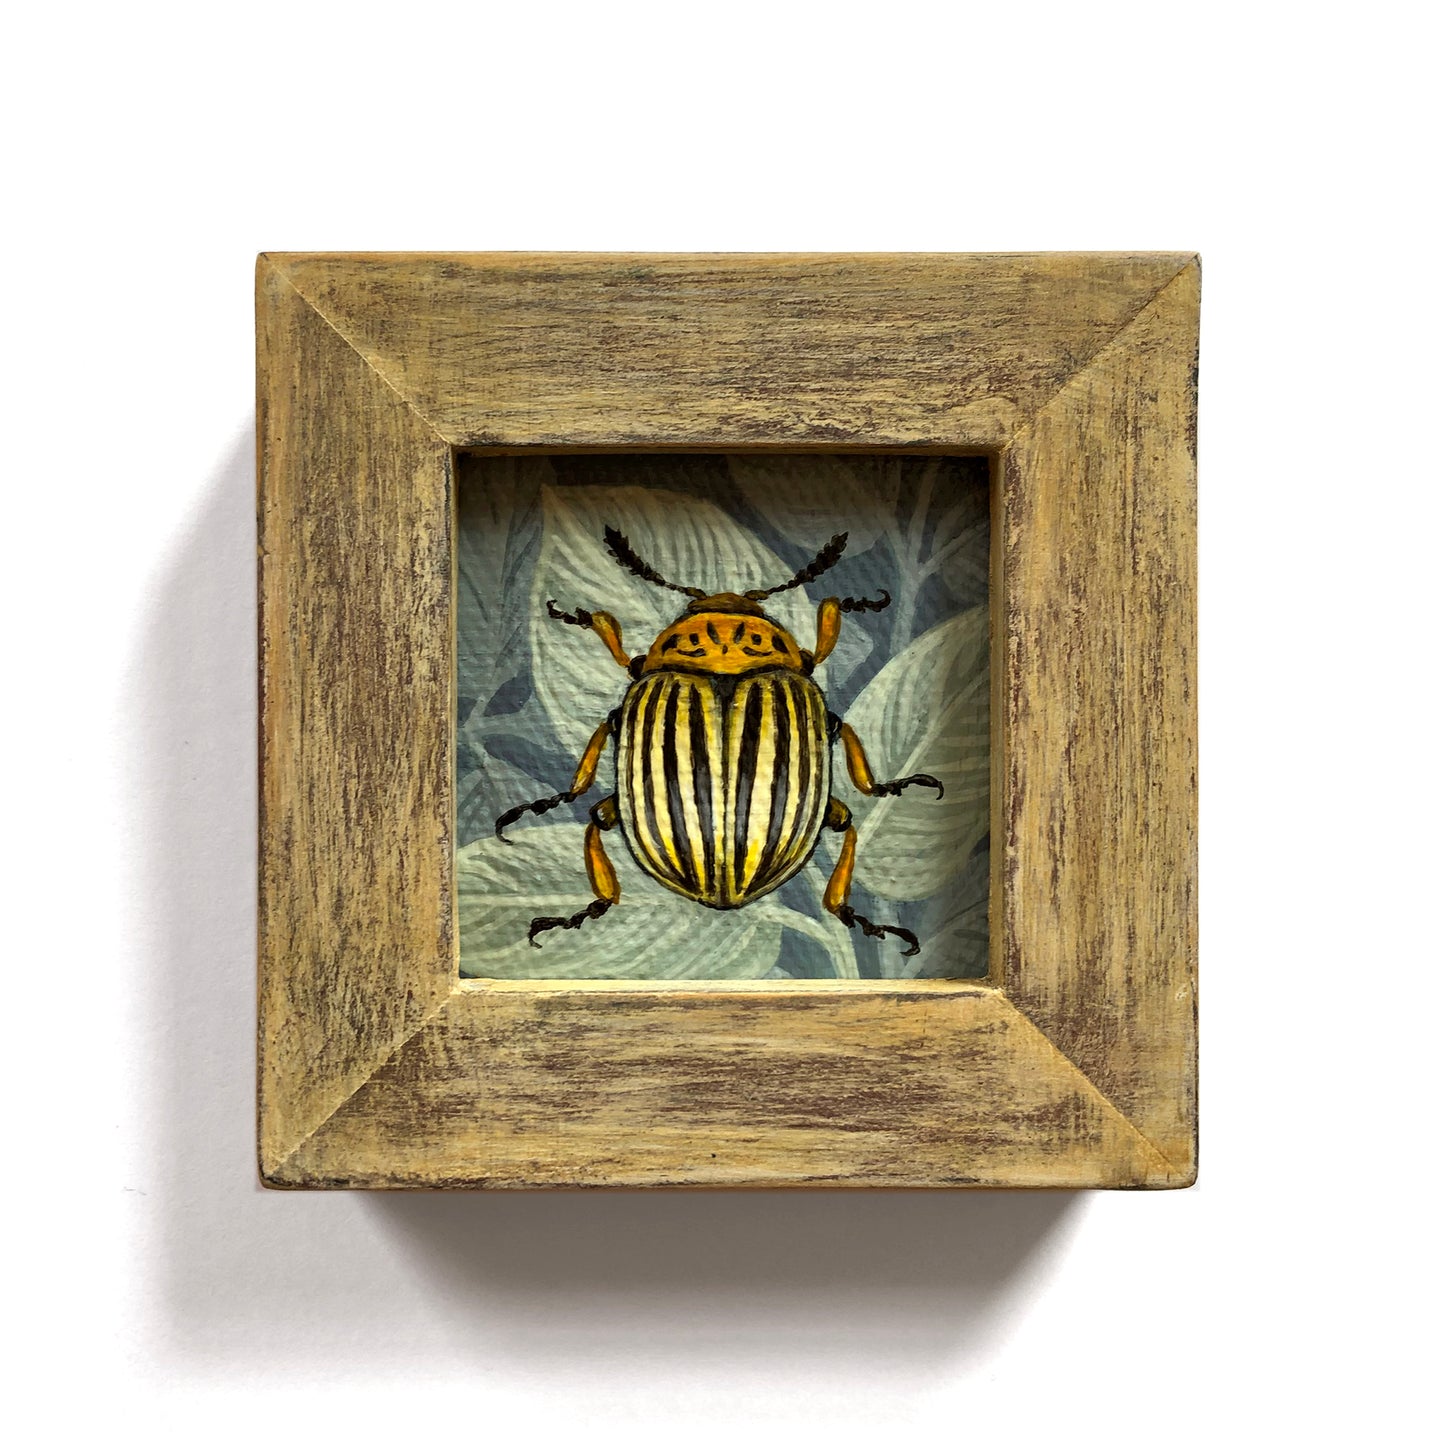 Vasilisa Romanenko - Colorado Beetle